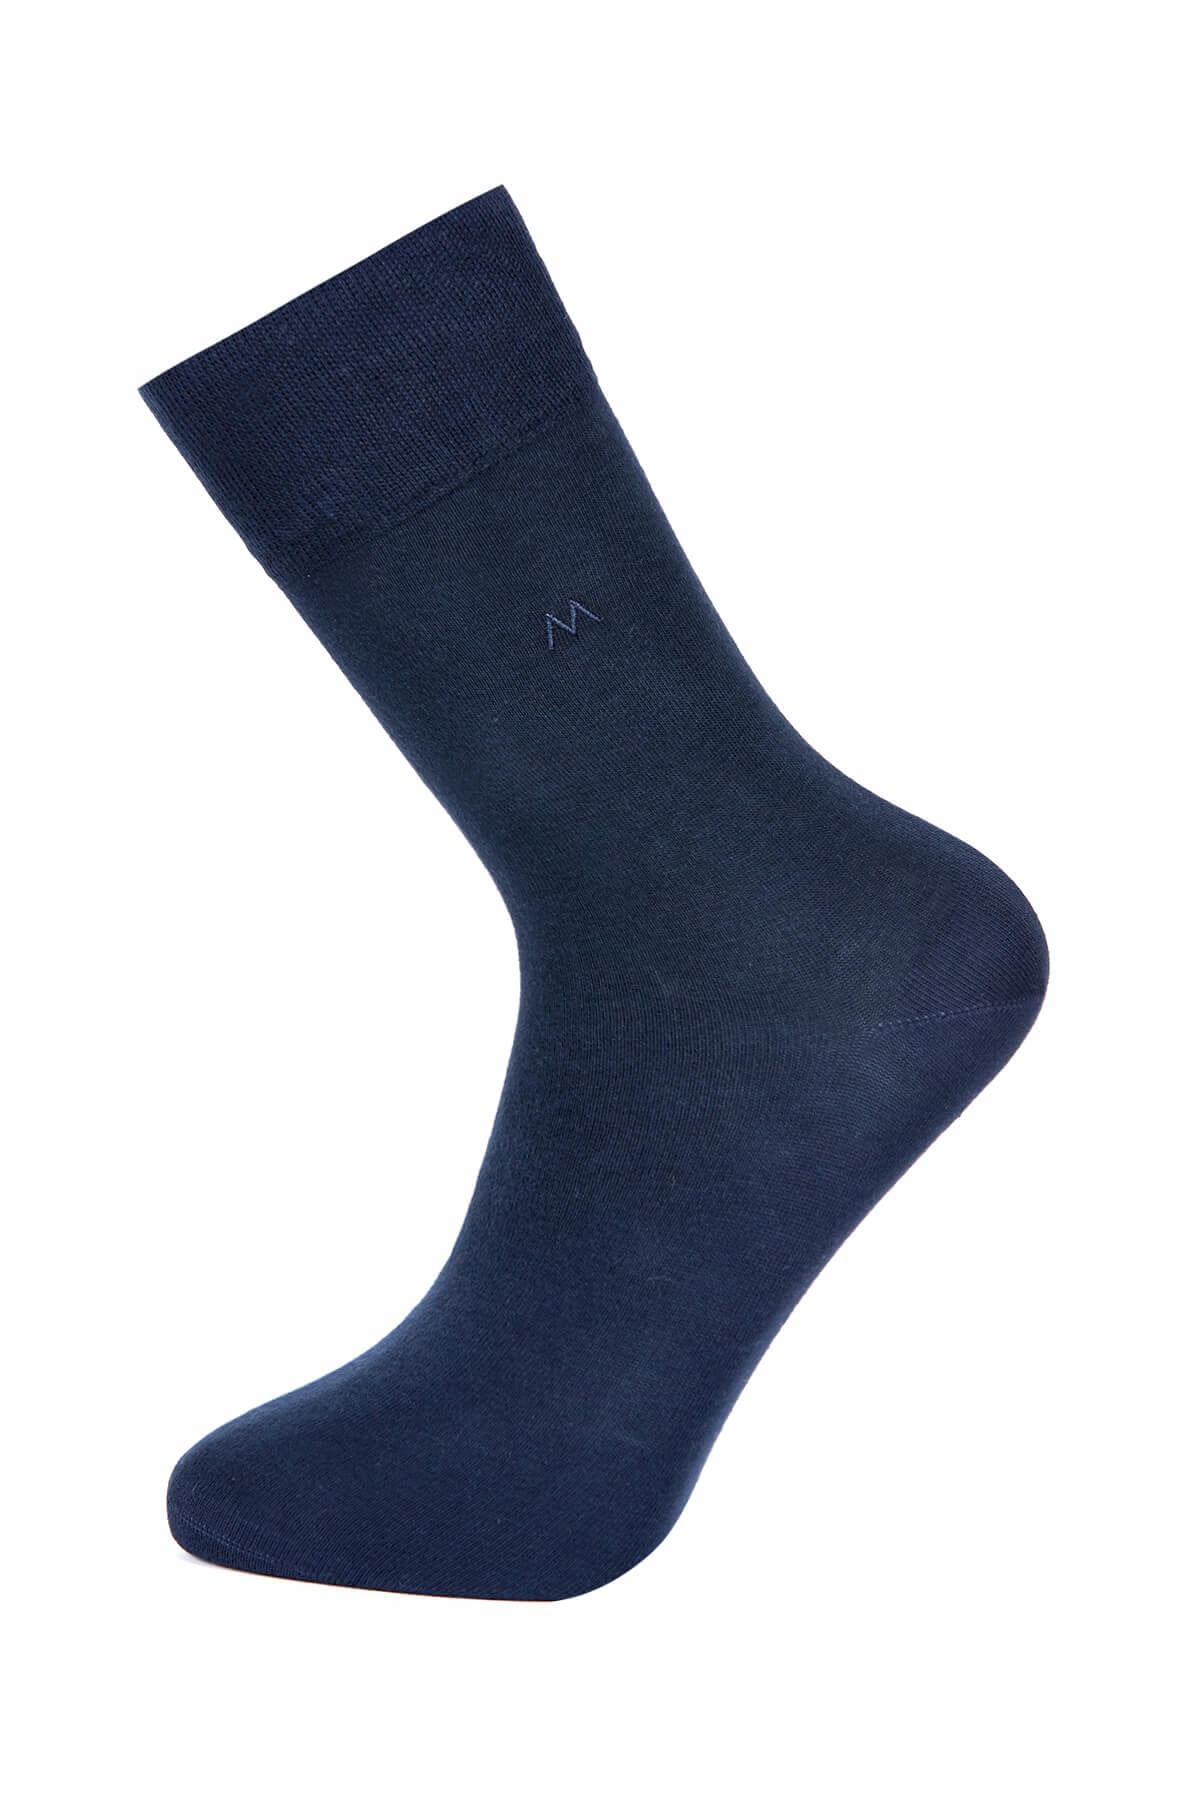 Hemington Erkek Lacivert Pamuklu Yazlık Çorap